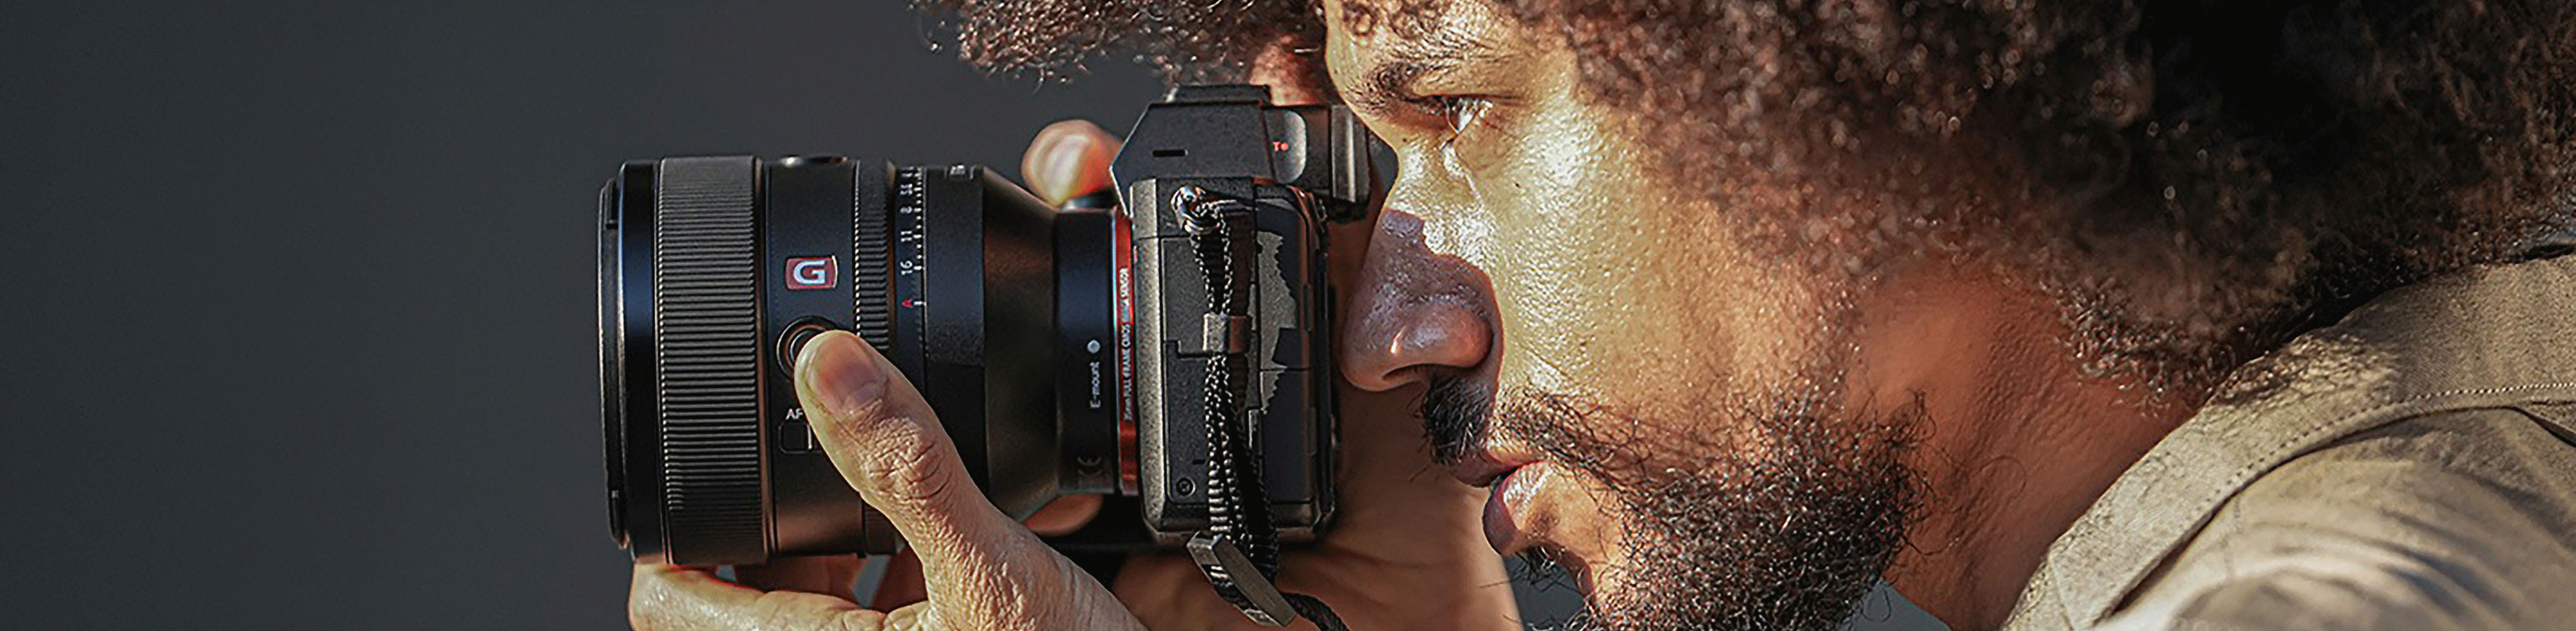 Bild einer Person mit einer Kamera in der Hand, an der das FE 50 mm F1.2 GM Objektiv montiert ist